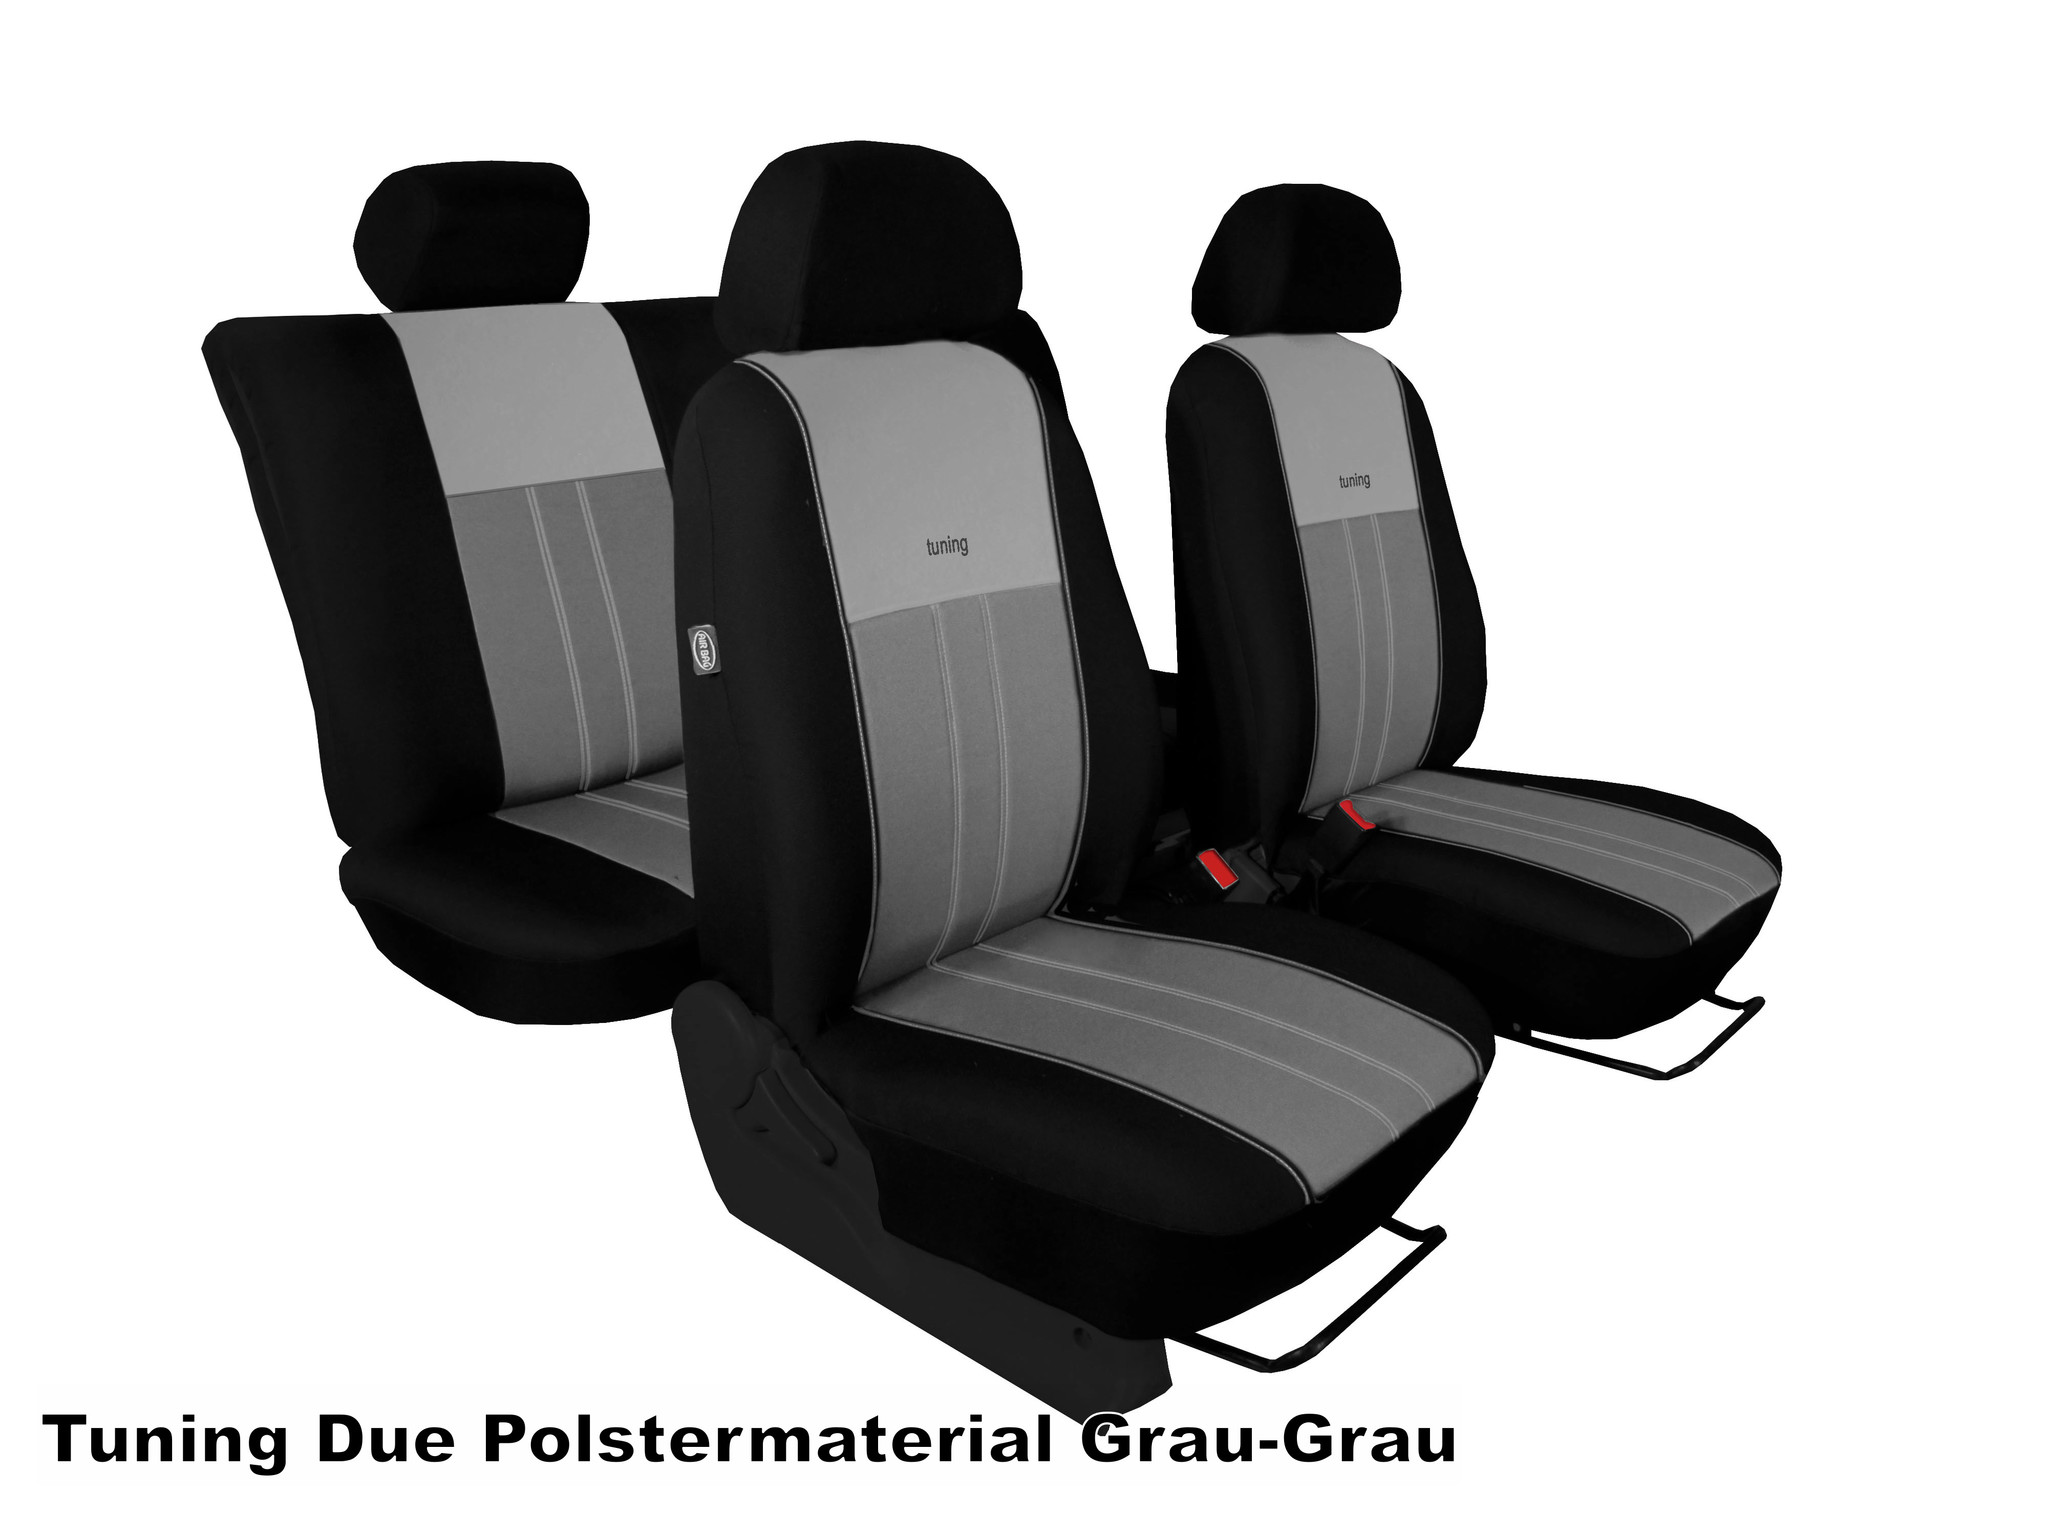 Sitzbezüge Auto Leder Autositzbezüge Universal Set Für Ford Focus